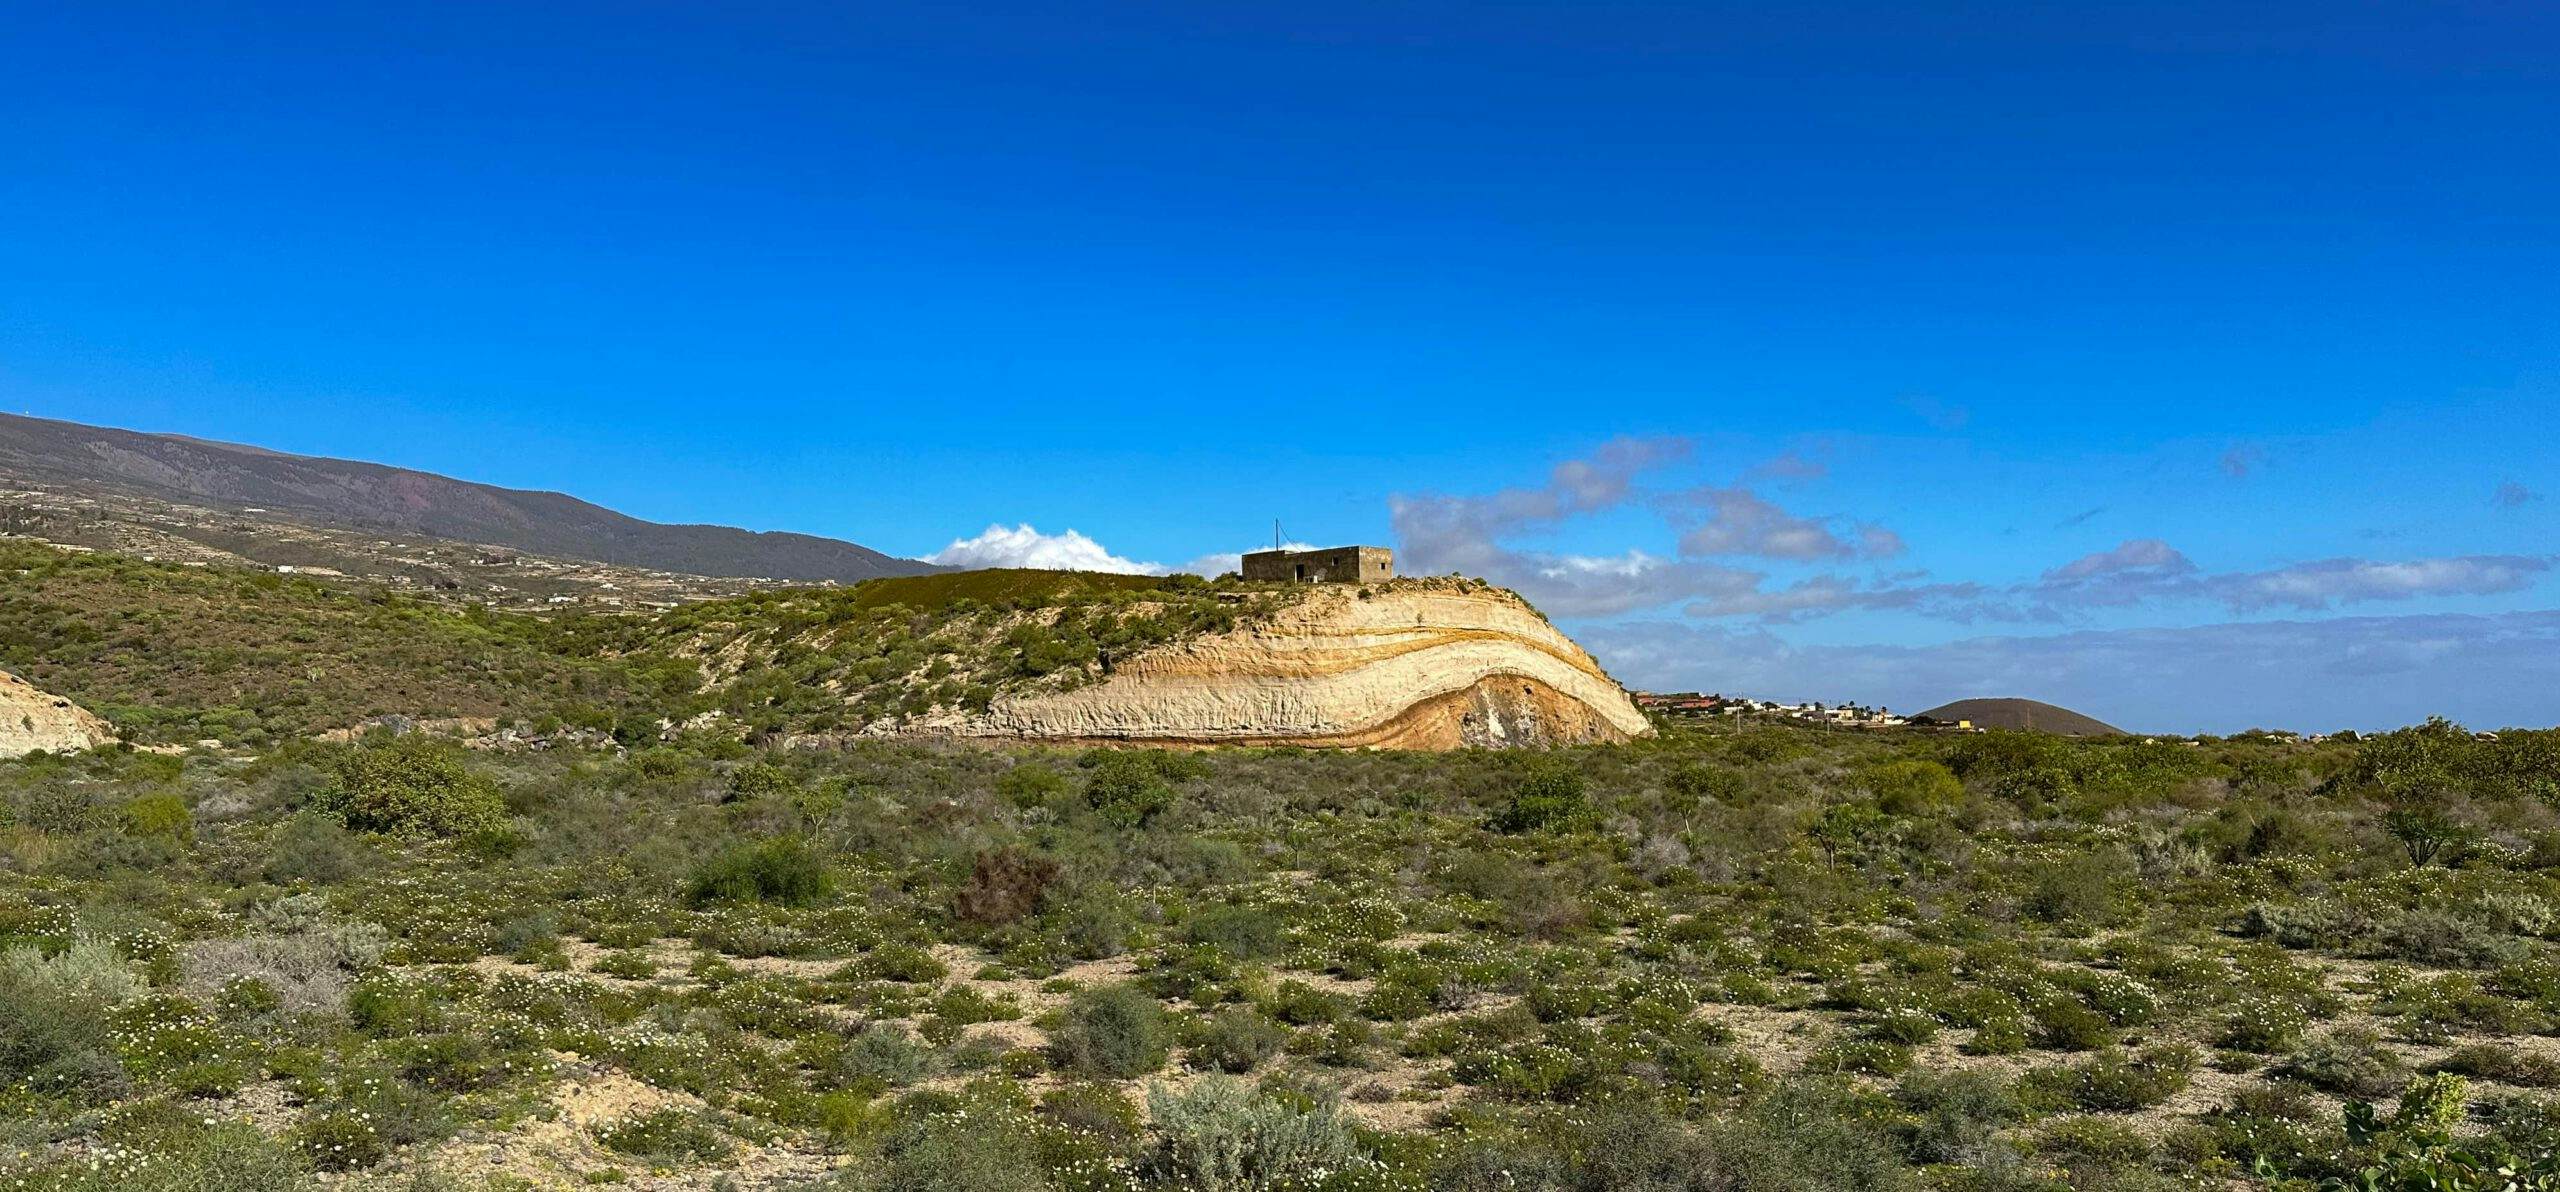 Weite Landschaft mit imposanten Sand- und Felsformationen bei Icor - Camino Real del Sur